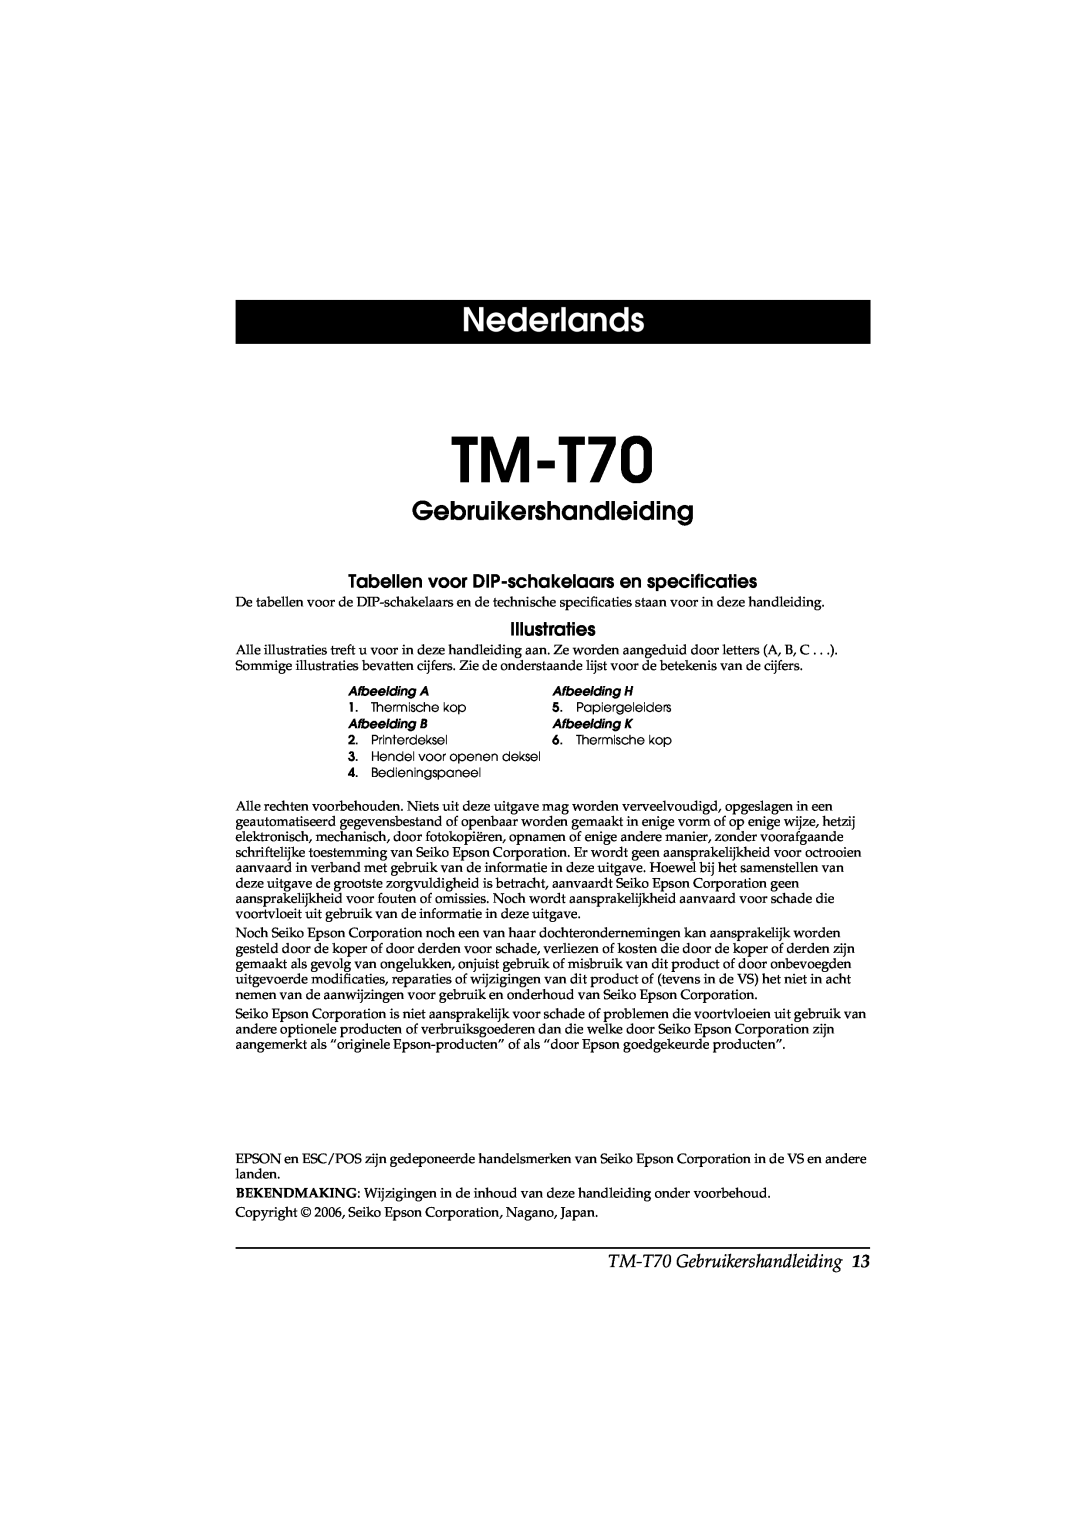 Seiko Group TM-T70 Nederlands, Gebruikershandleiding, Tabellen voor DIP-schakelaars en specificaties, Illustraties 